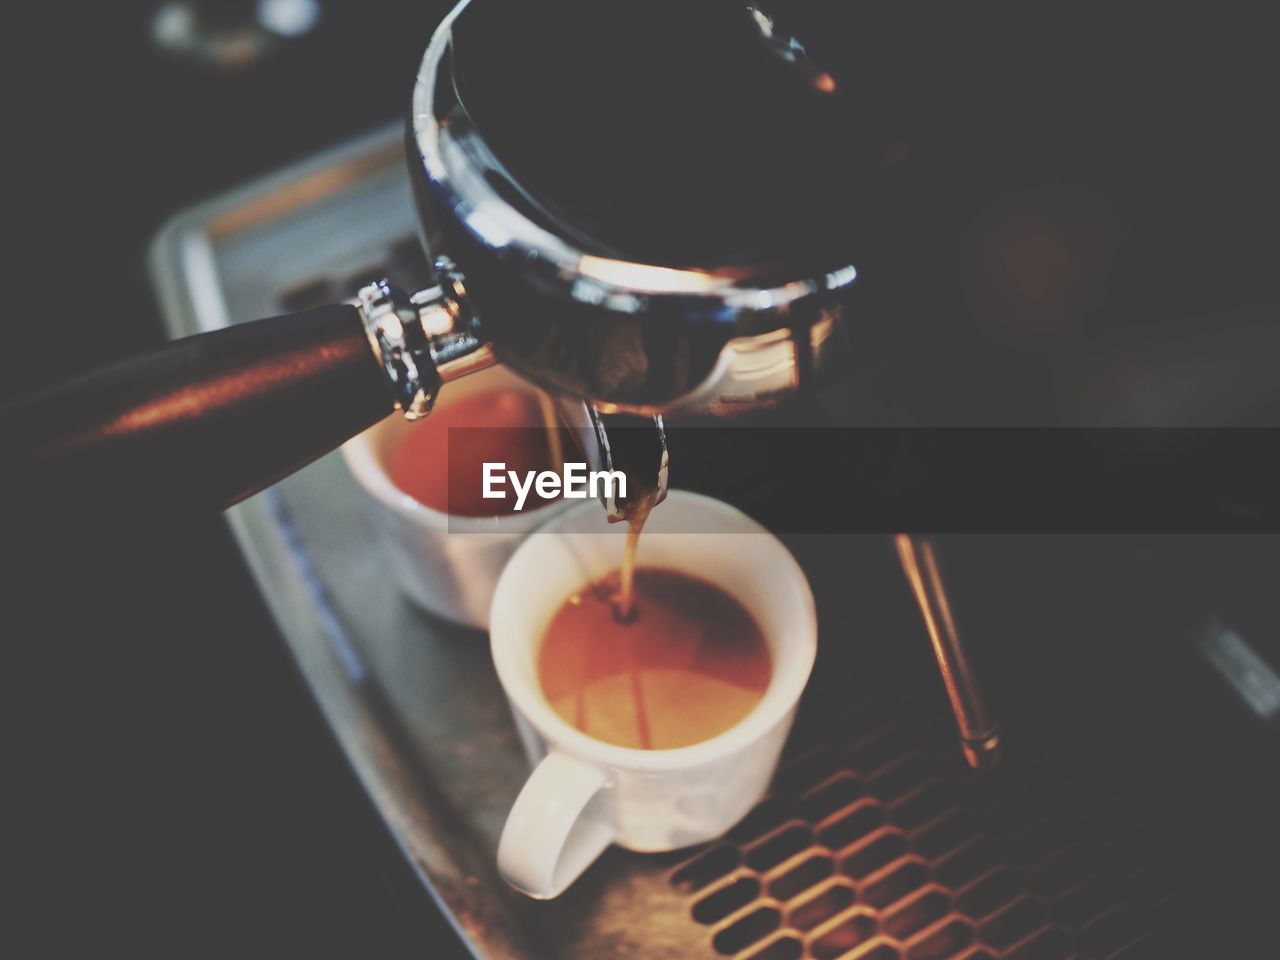 Espresso machine pouring coffee in cups